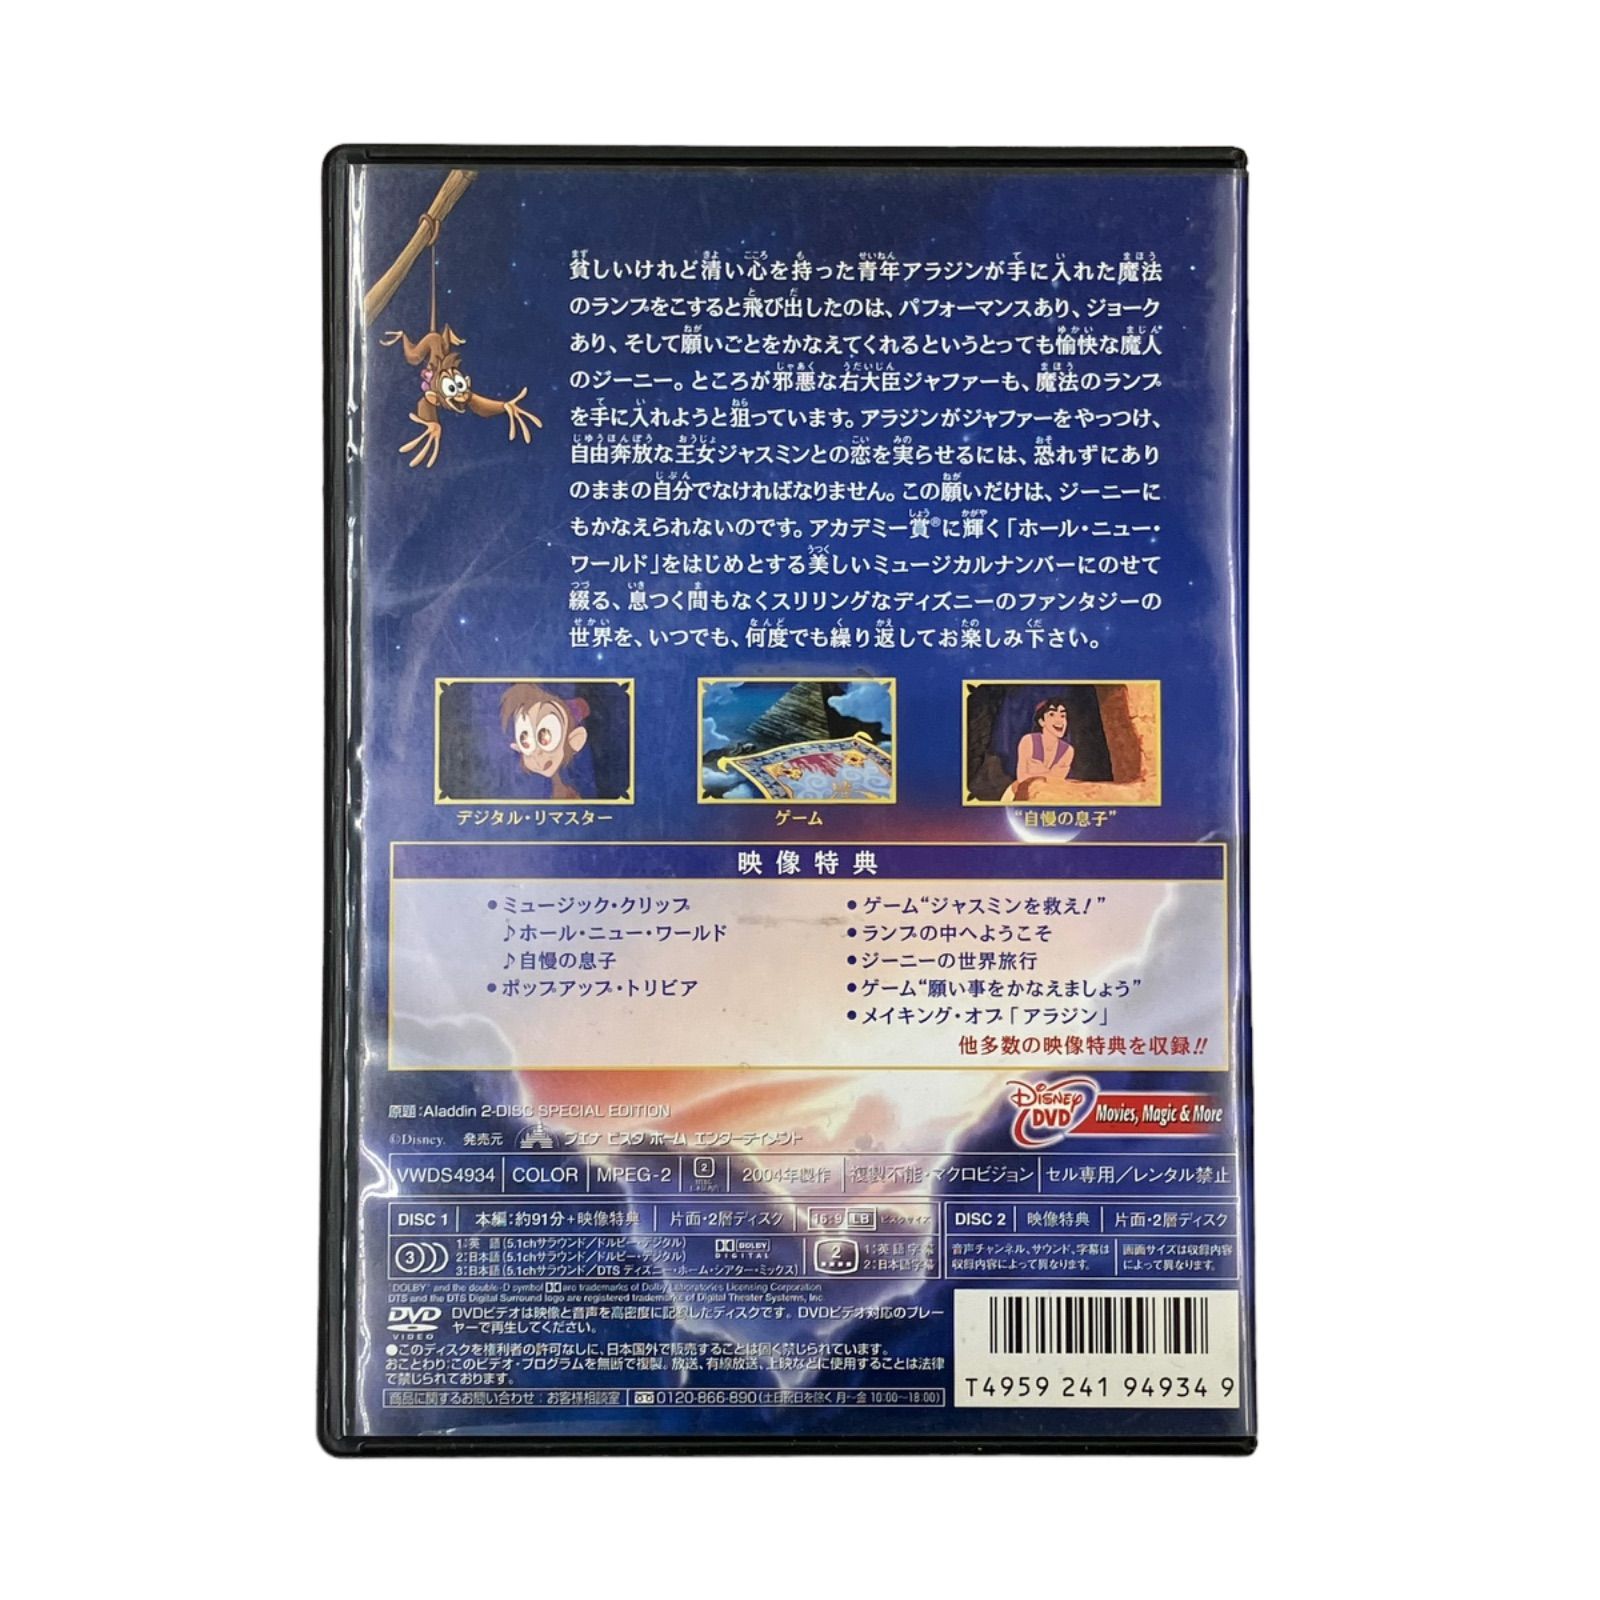 アラジン スペシャル・エディション DVD 2枚組 ディズニー (羽賀研二 